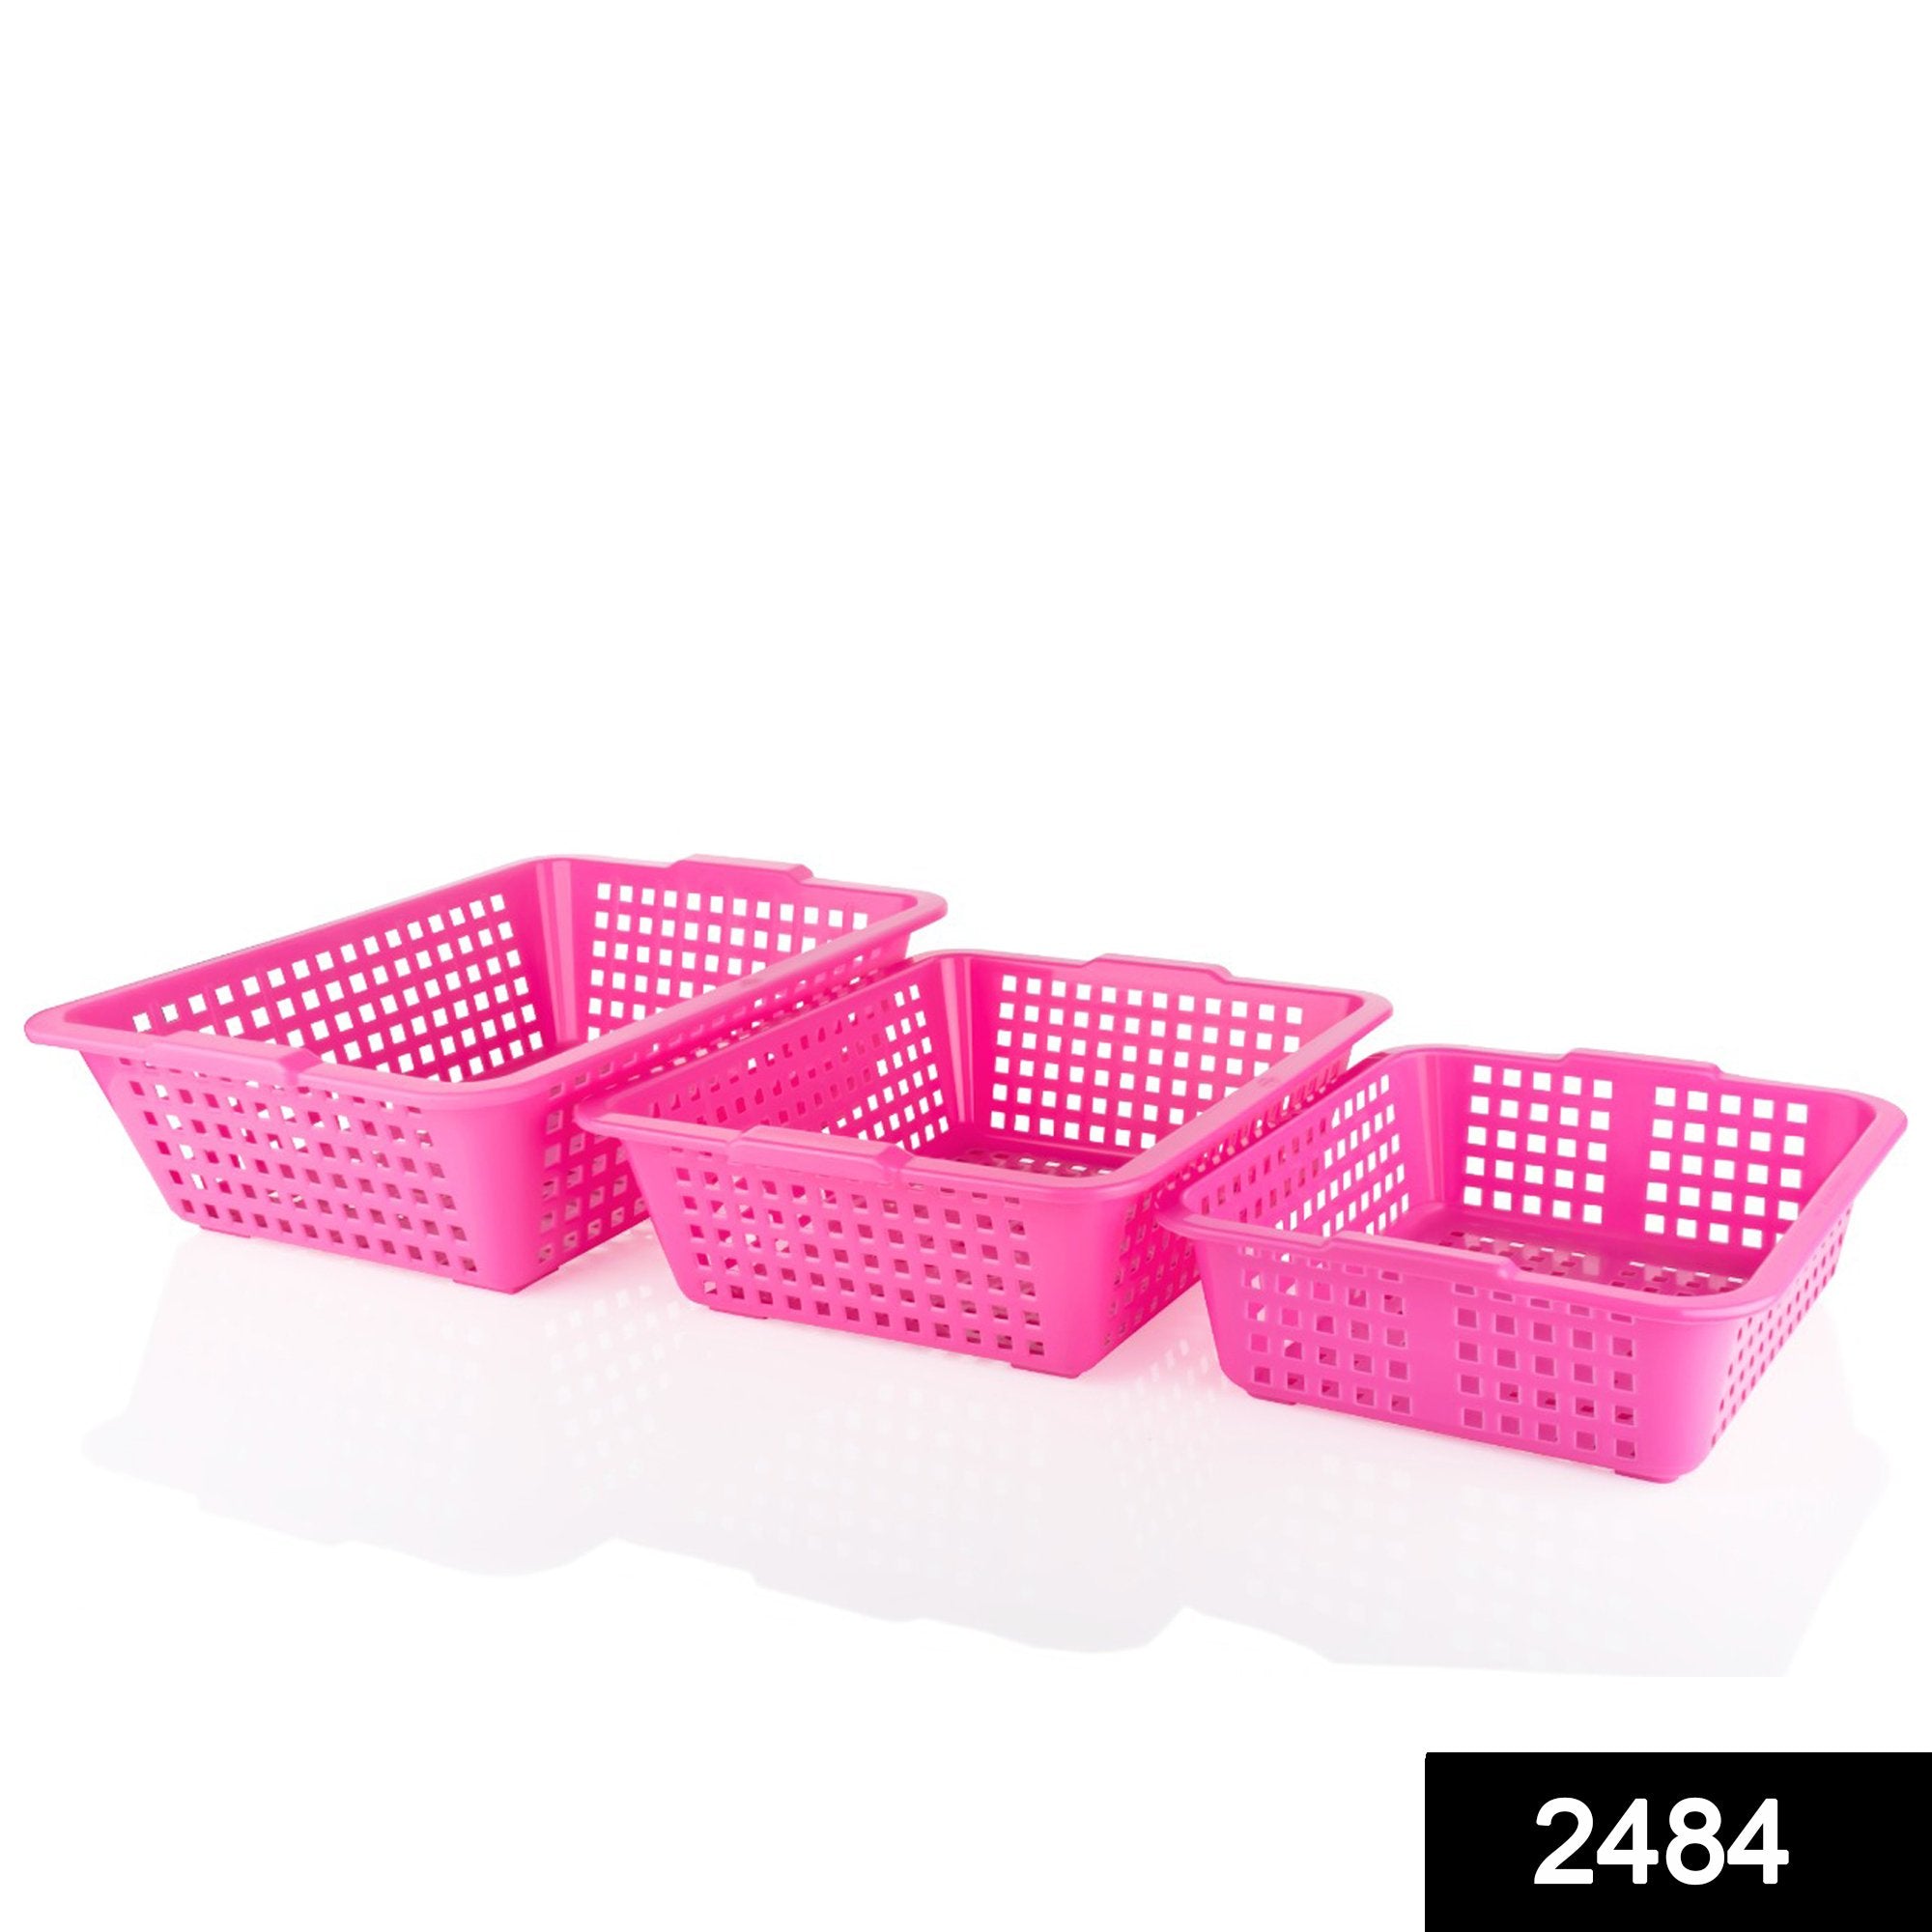 2484 Plastic Multiple Size Cane Fruit Baskets (3 Size Large, Medium, Small) - SkyShopy